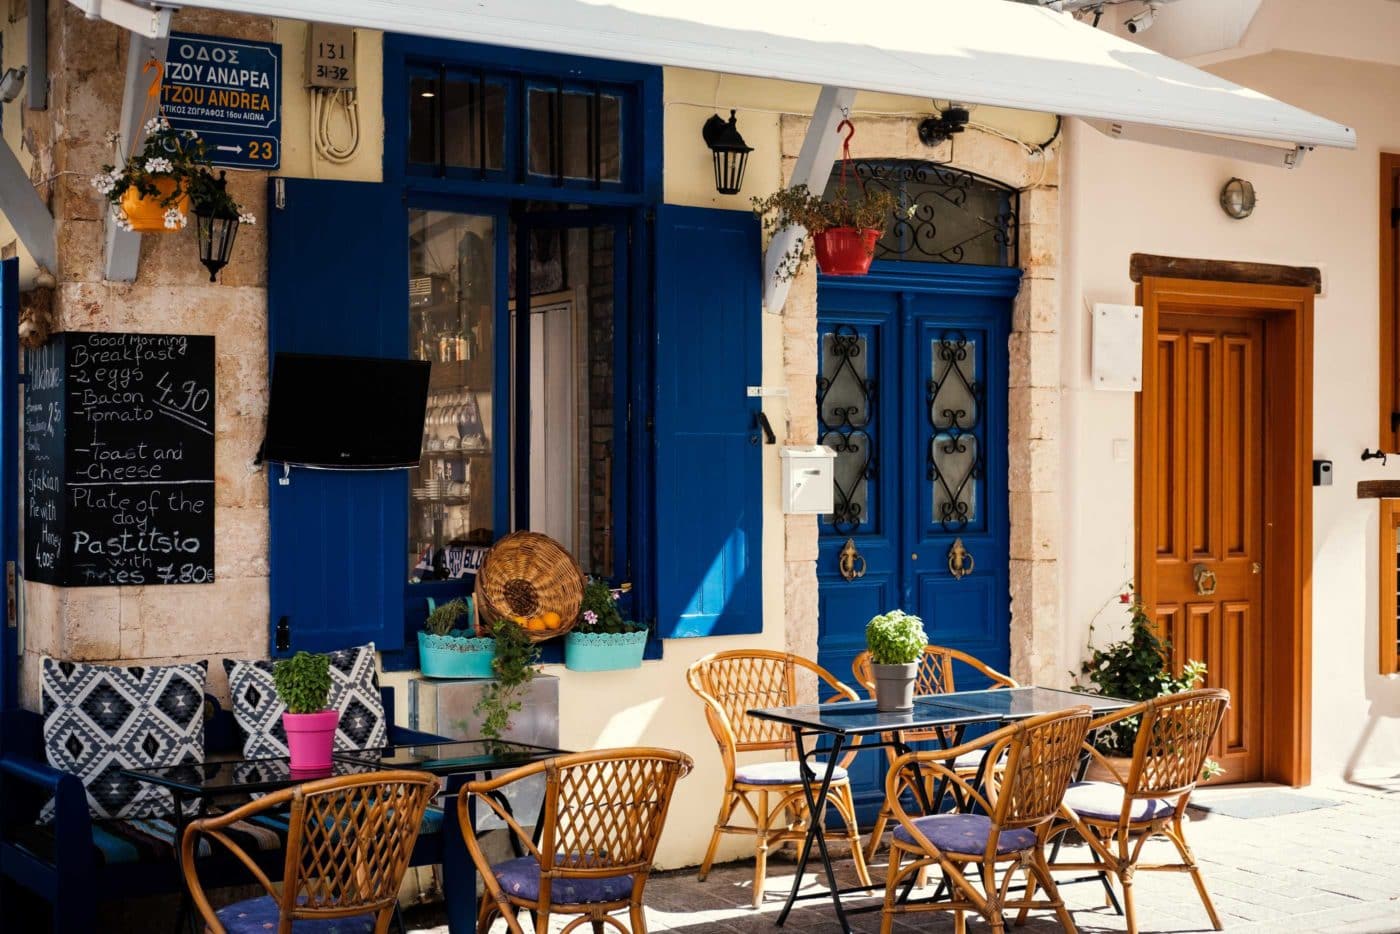 Tavern in Crete Greece